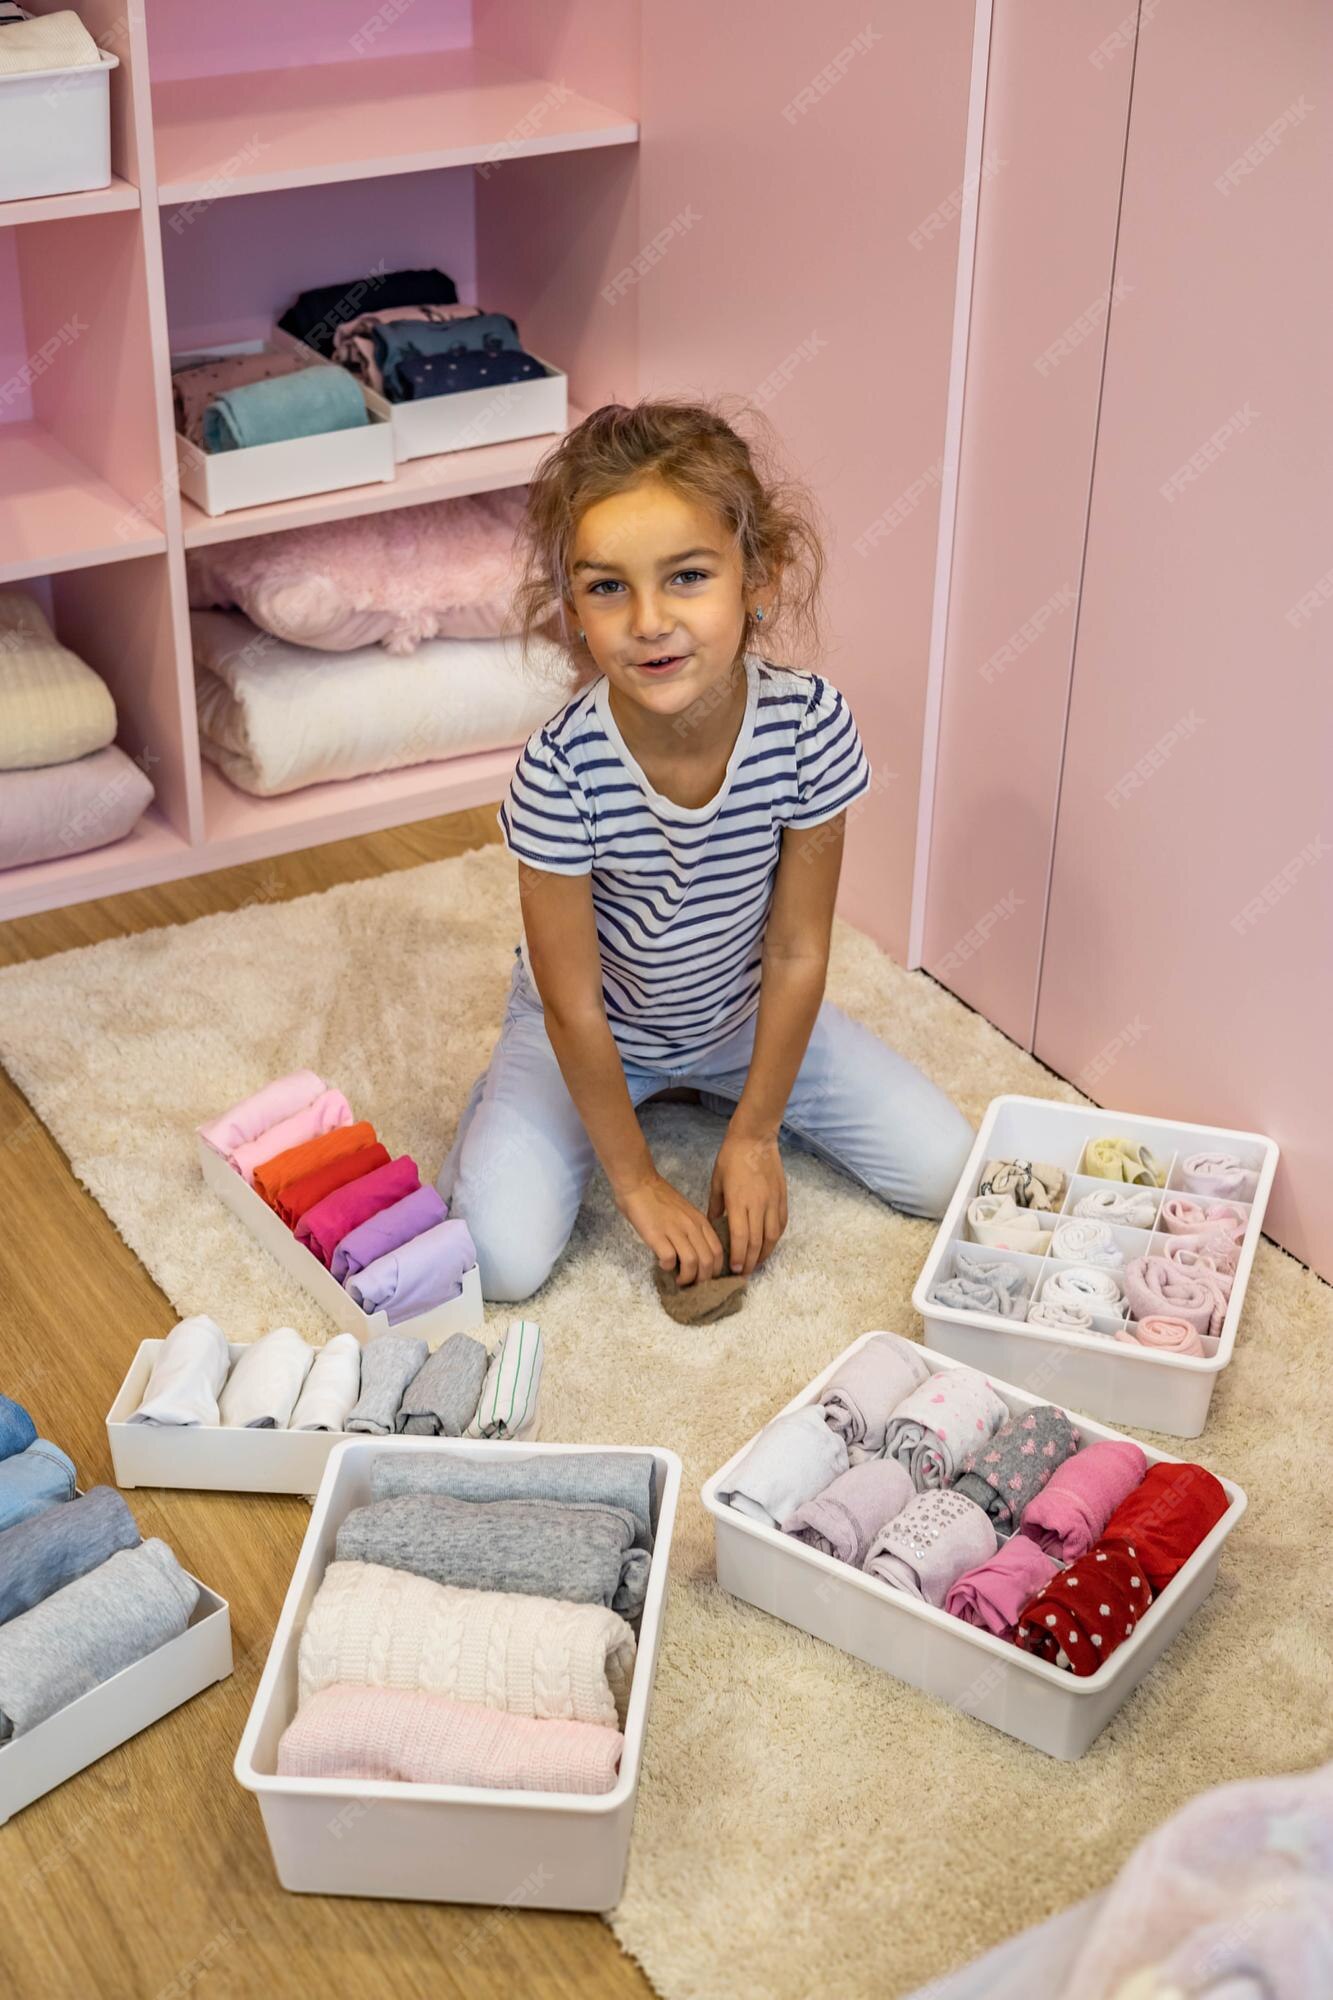 La niña feliz enrolla cuidadosamente la ropa interior y calcetines en una caja de plástico método marie kondo | Foto Premium